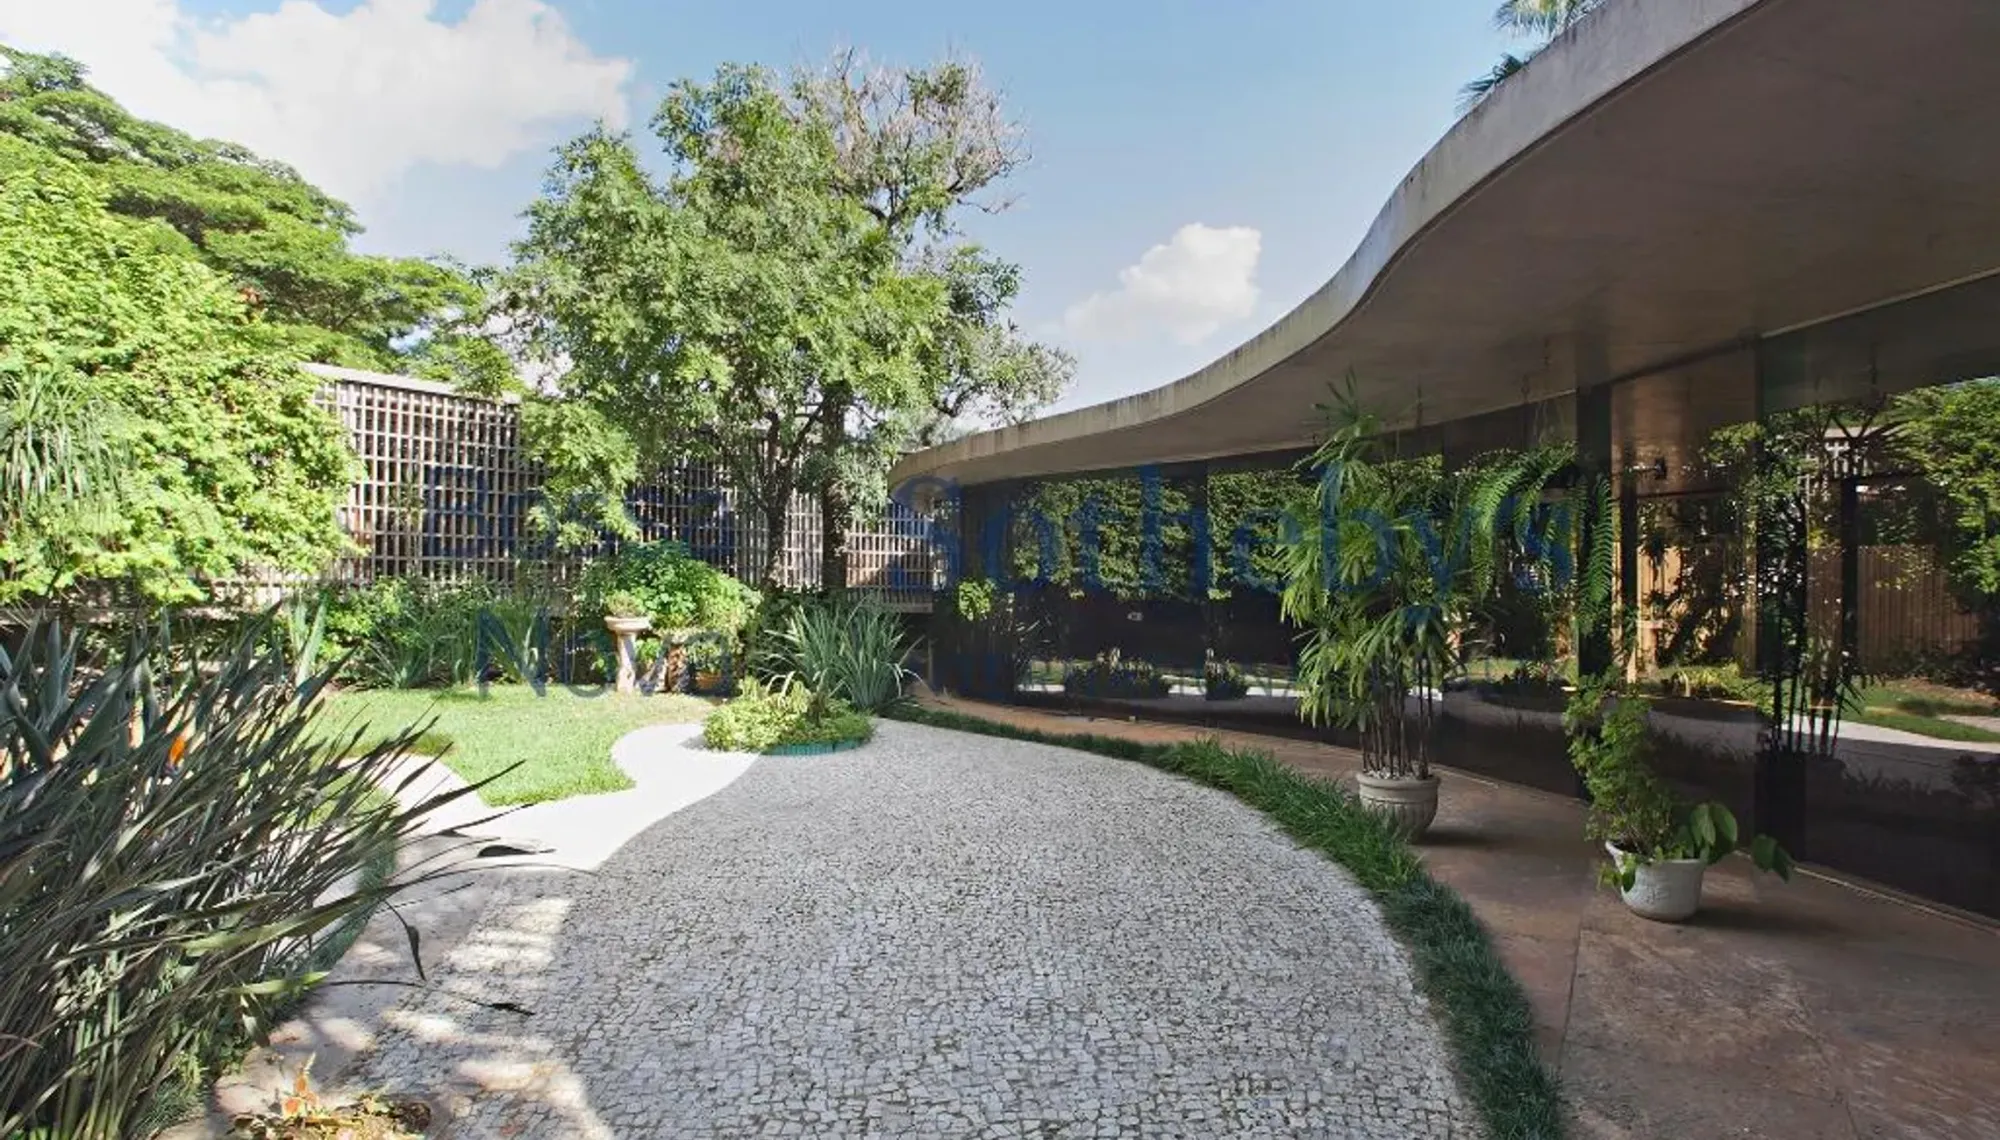 Casa de Oscar Niemeyer